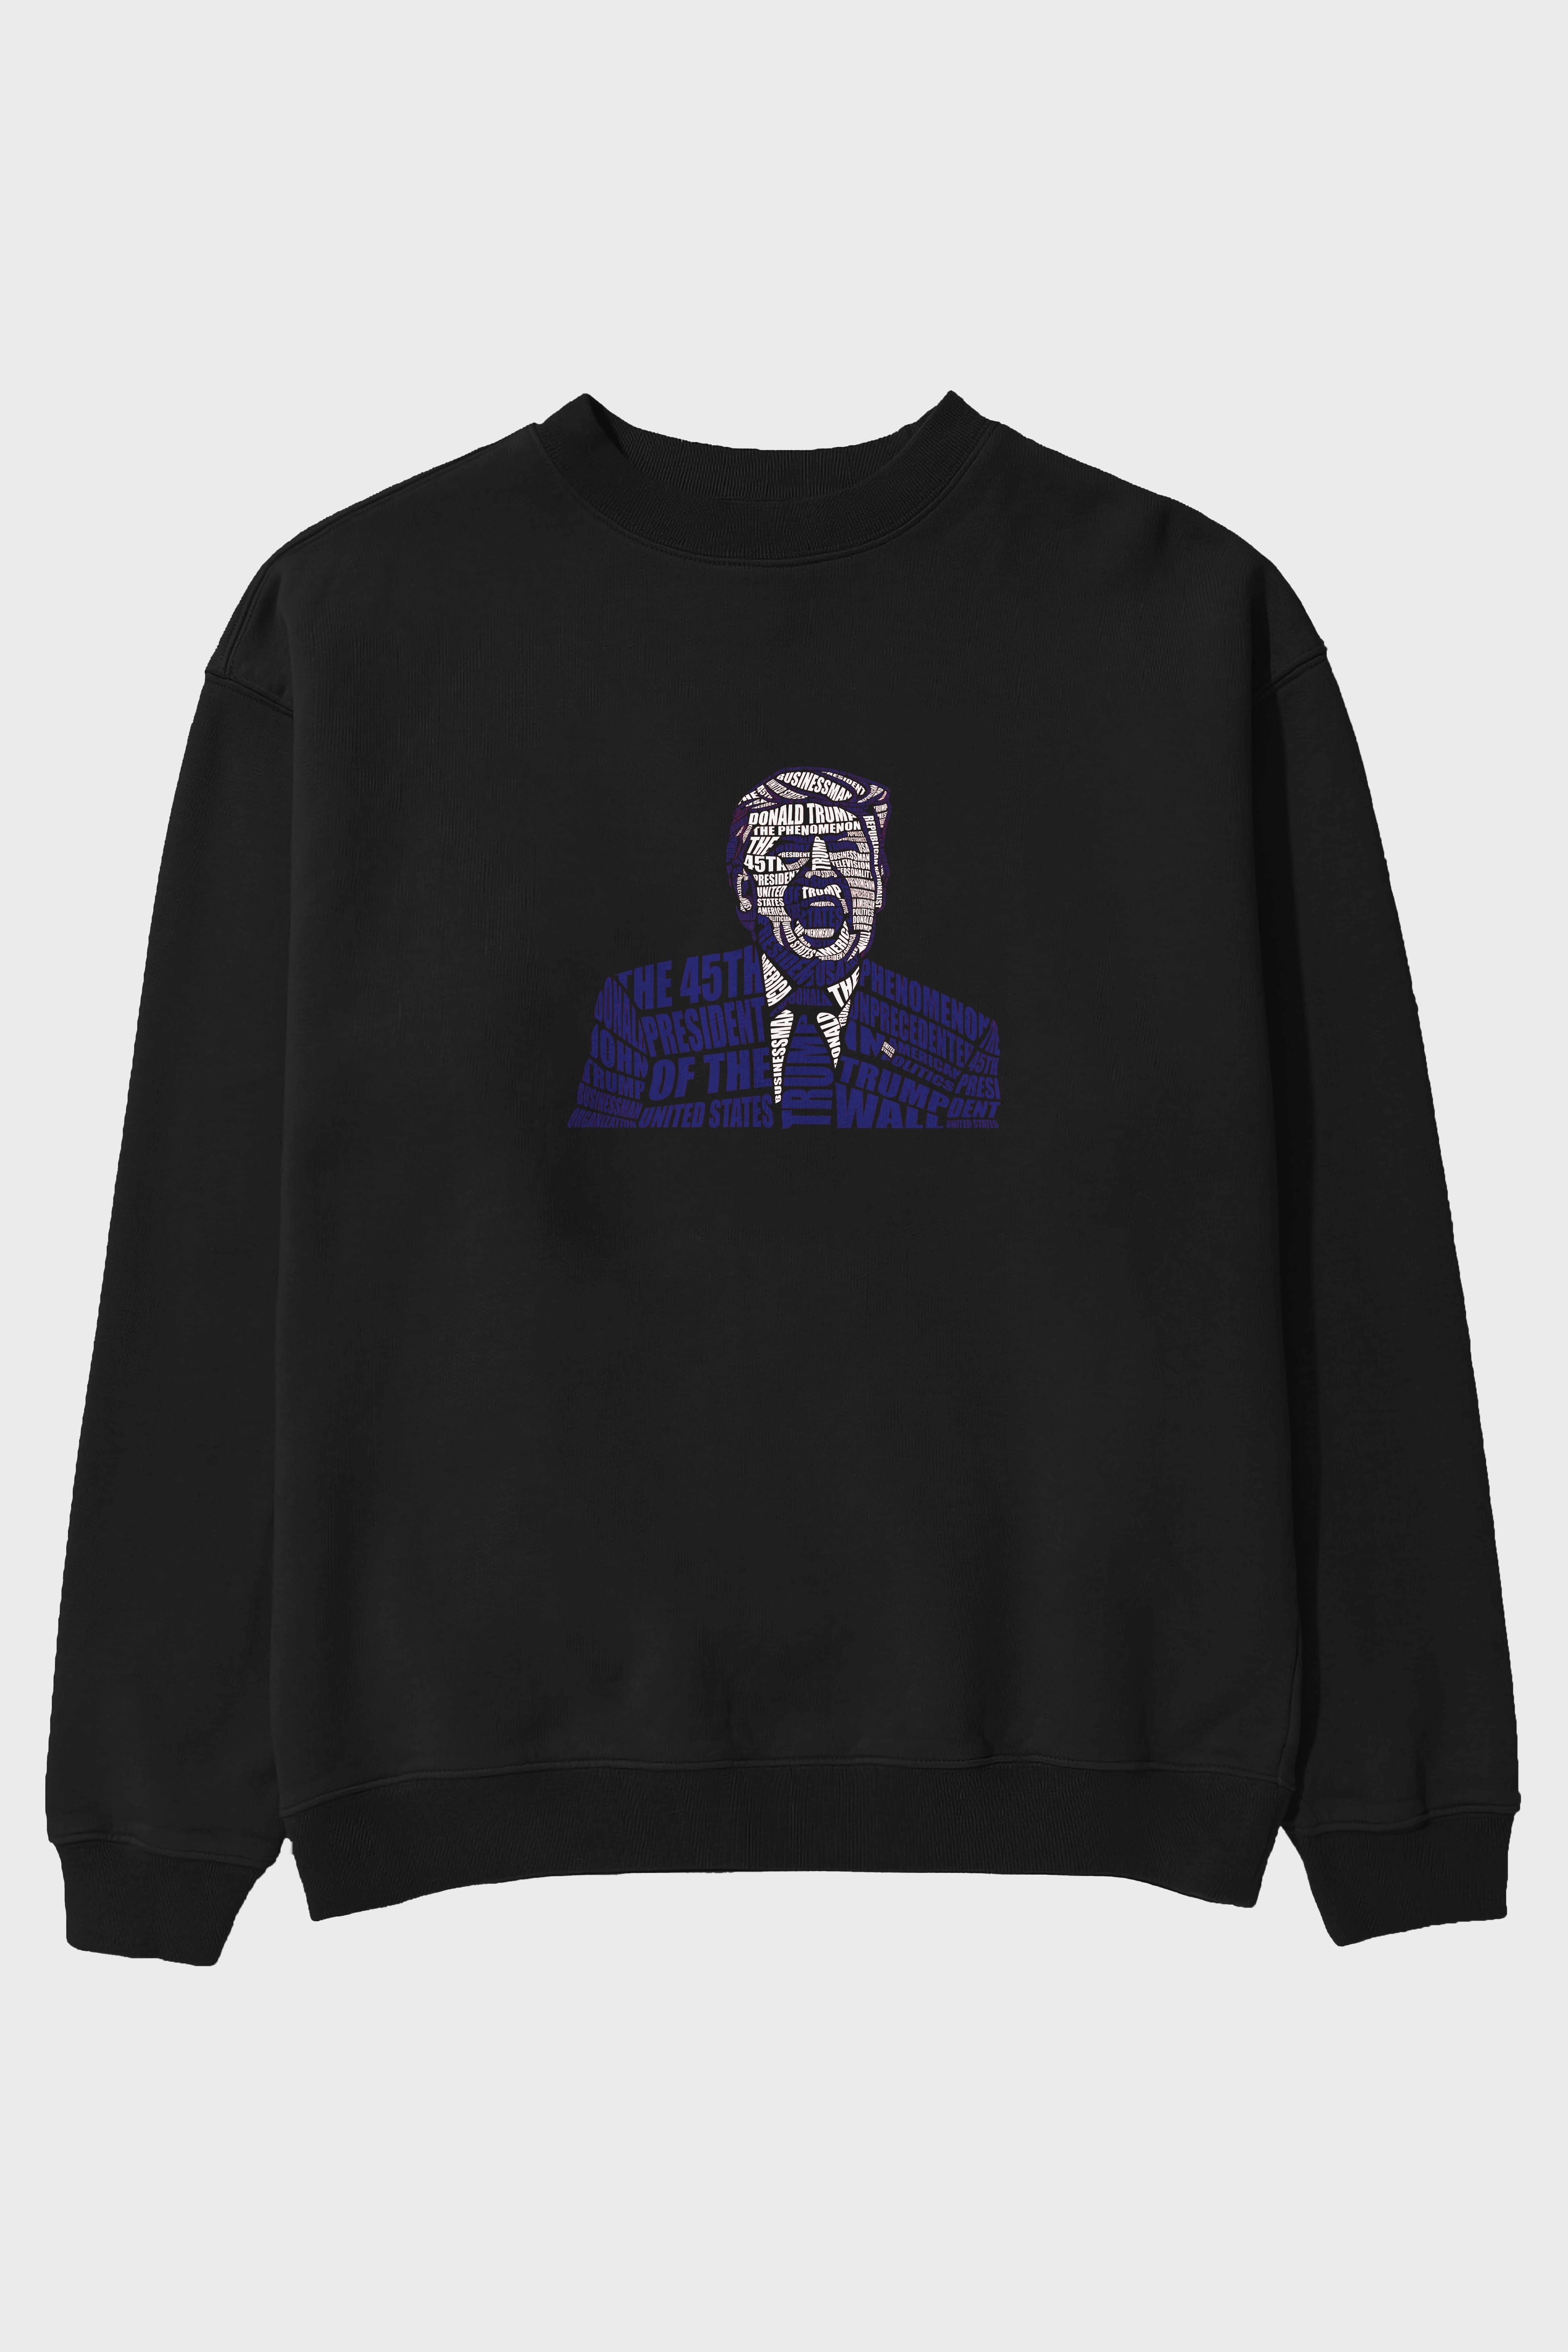 Trump Calligram Ön Baskılı Oversize Sweatshirt Erkek Kadın Unisex